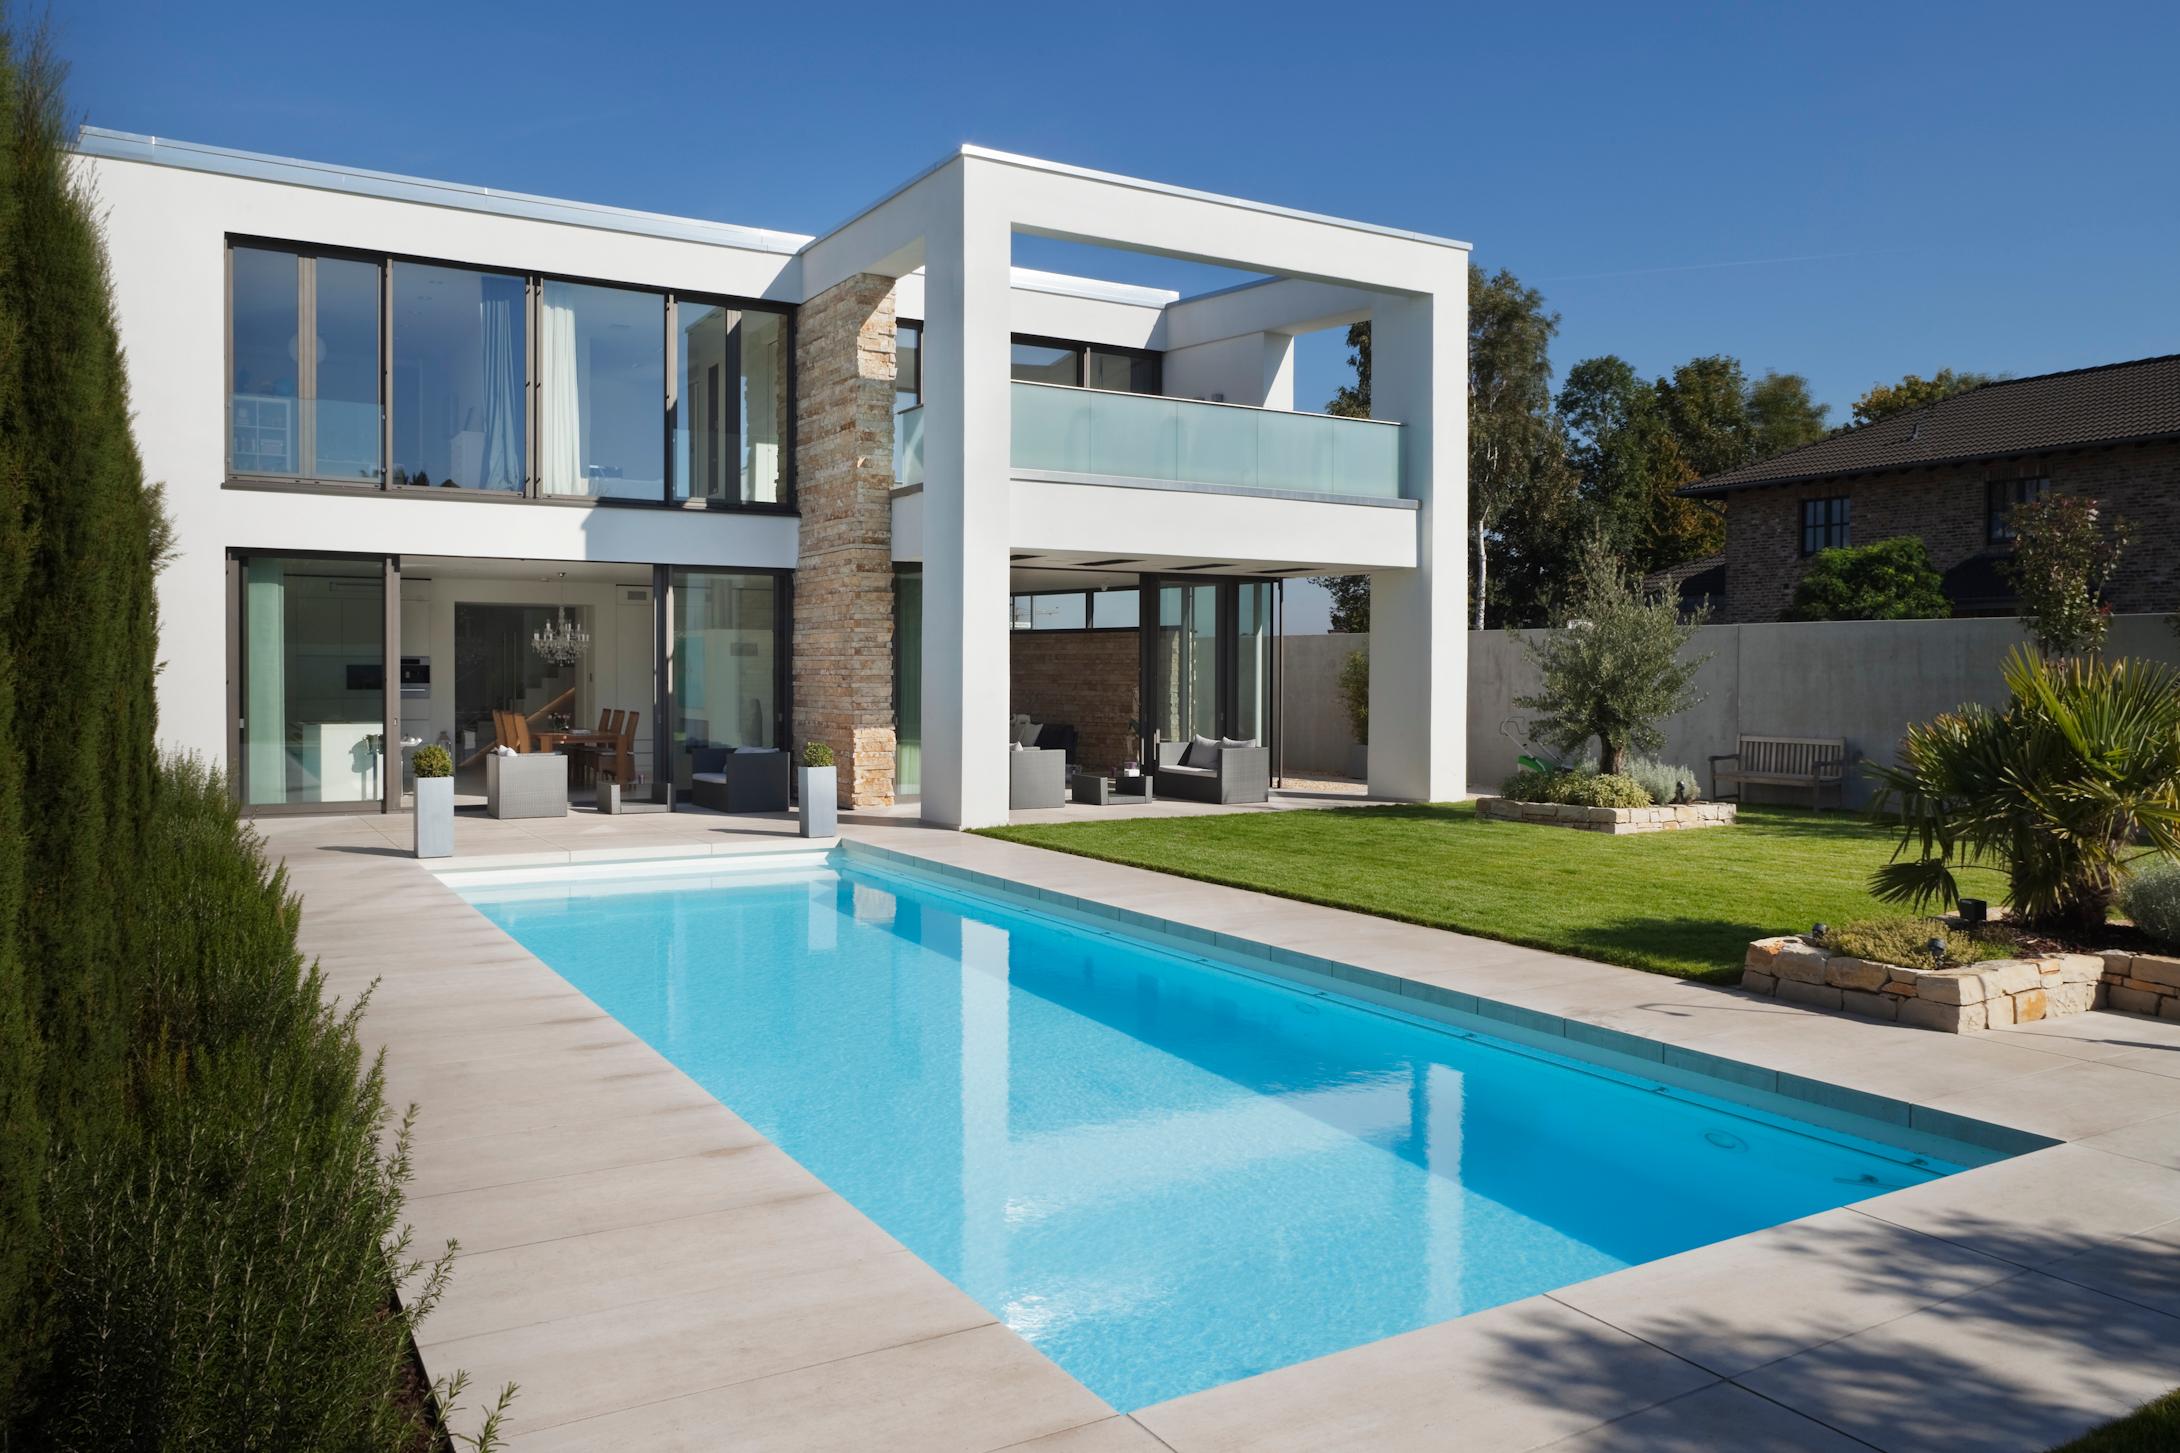 Moderne Villa im mediterranen Stil #pool #puristisch #mediterran #minimalistisch #überdachteterrasse #bruchsteinwand #mediterranerstil #luftbalken #loggia ©Skandella Architektur Innenarchitektur